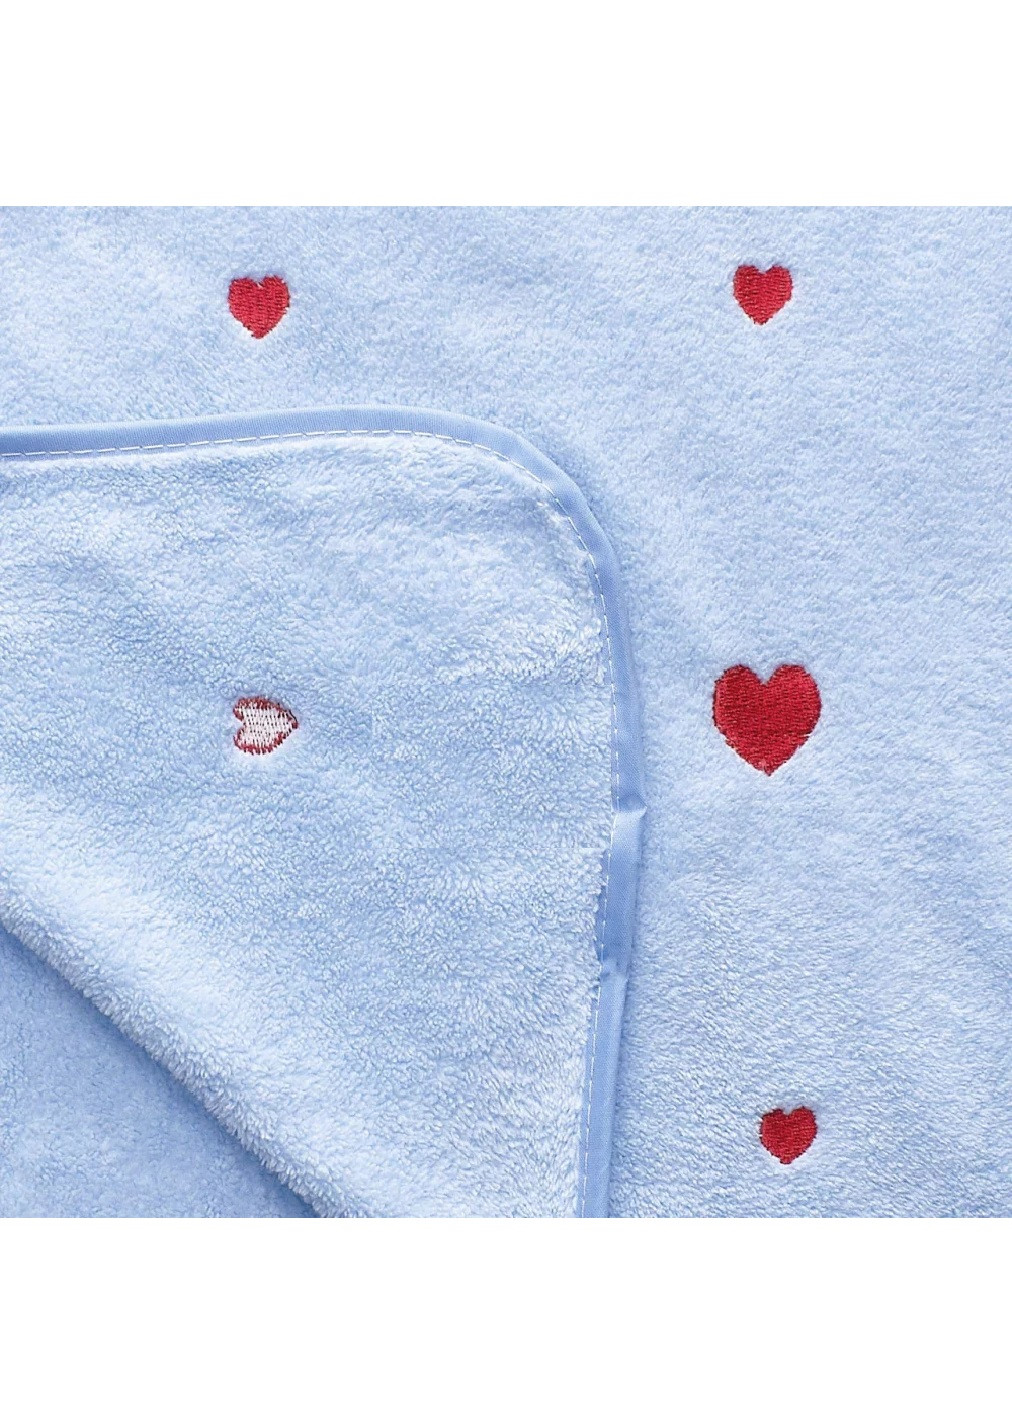 Unbranded полотенце микрофибра велюр для лица быстросохнущее влагопоглощающее с узором 100х50 см (476134-prob) сердце голубой сердечки голубой производство -